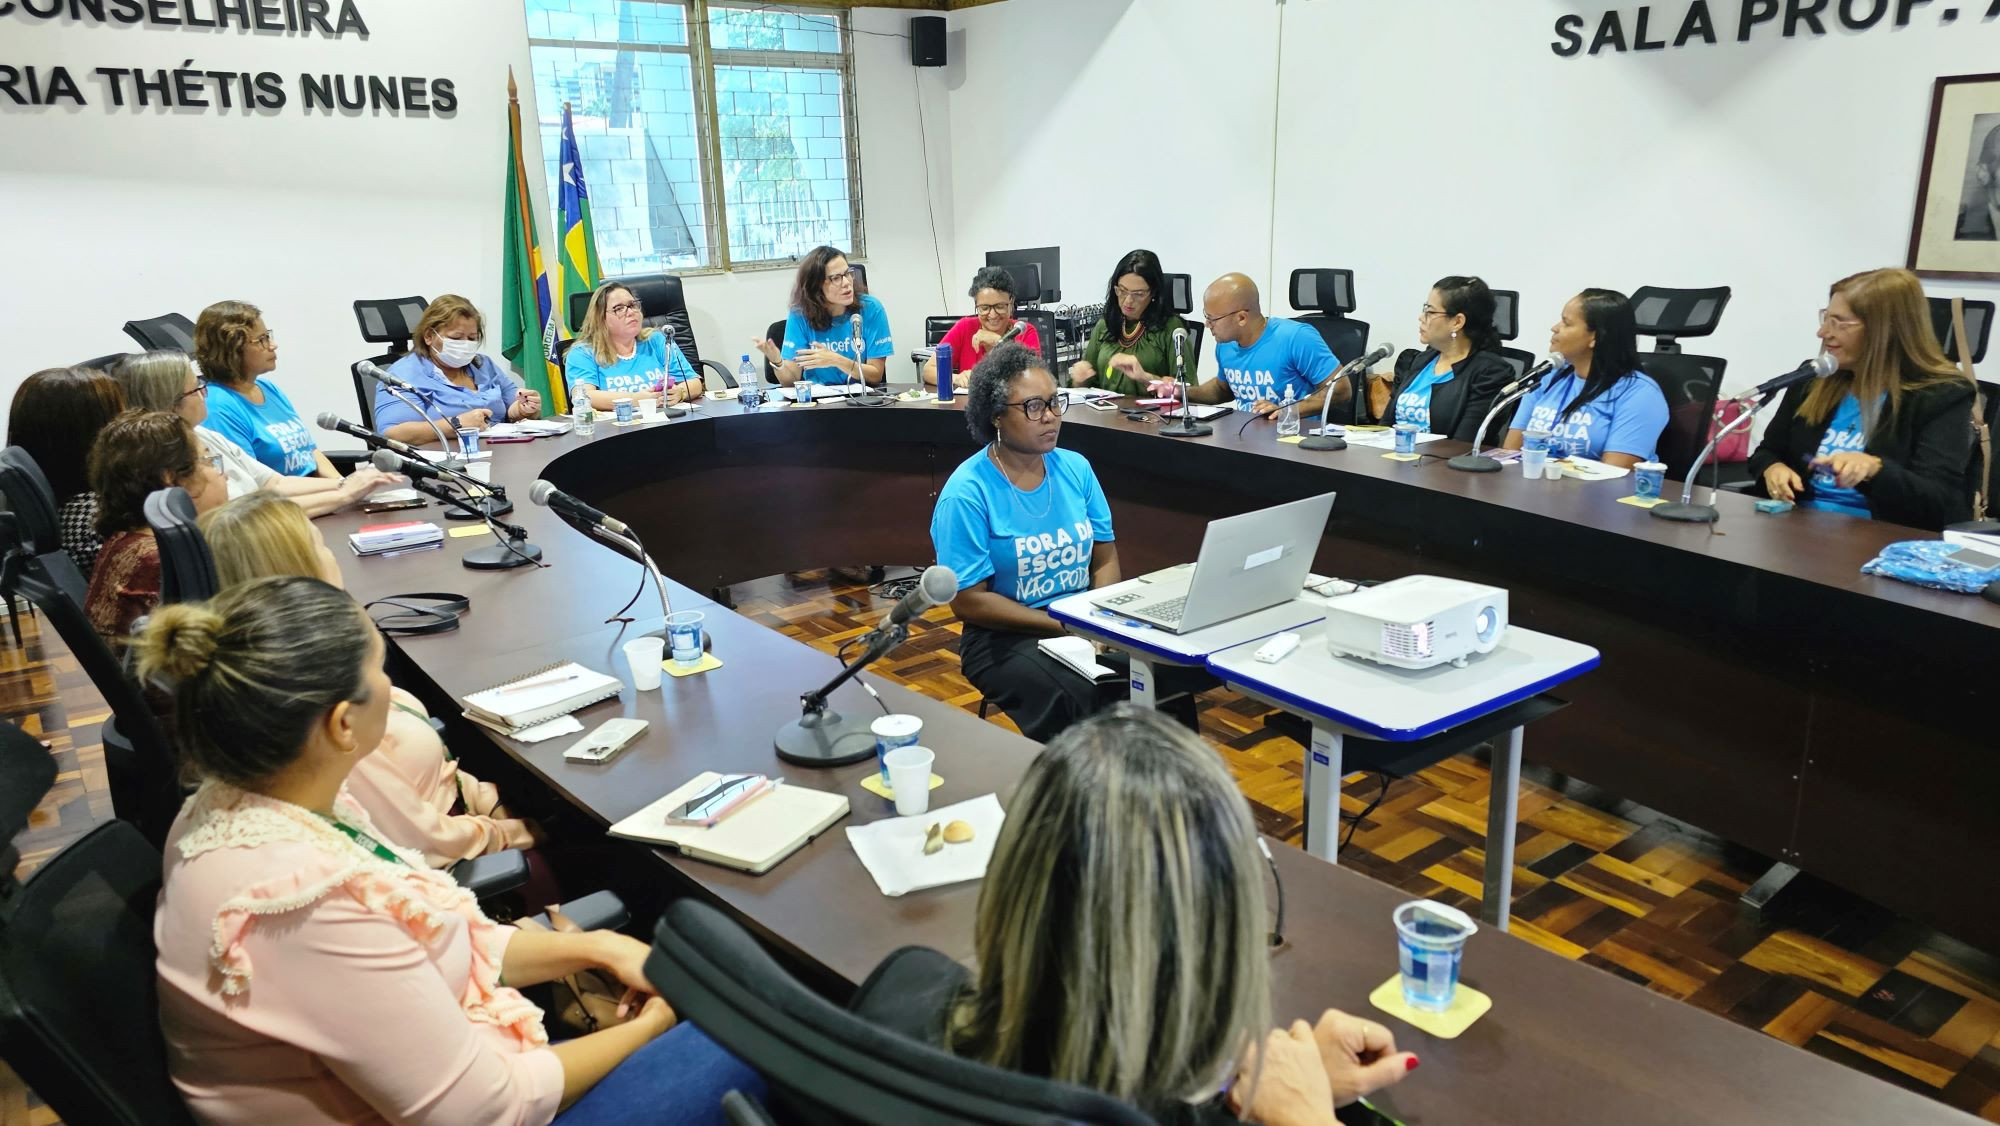 Representantes do UNICEF participam de Reunião do Comitê Gestor da Busca Ativa Escolar de Sergipe